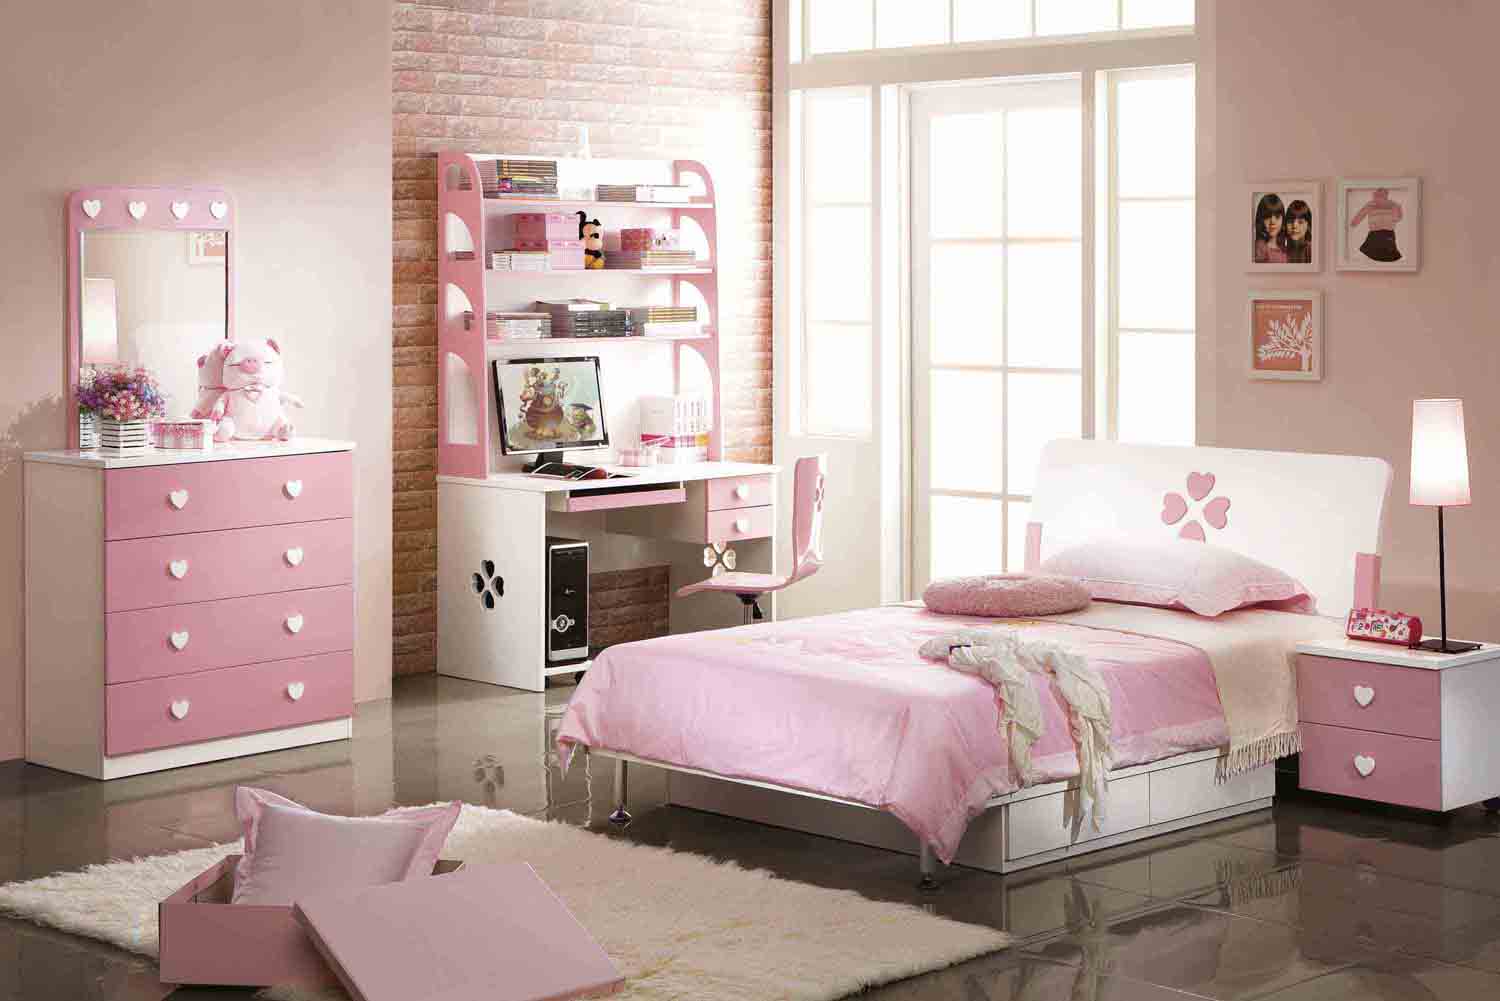 carta da parati rosa della camera da letto,camera da letto,mobilia,letto,camera,rosa